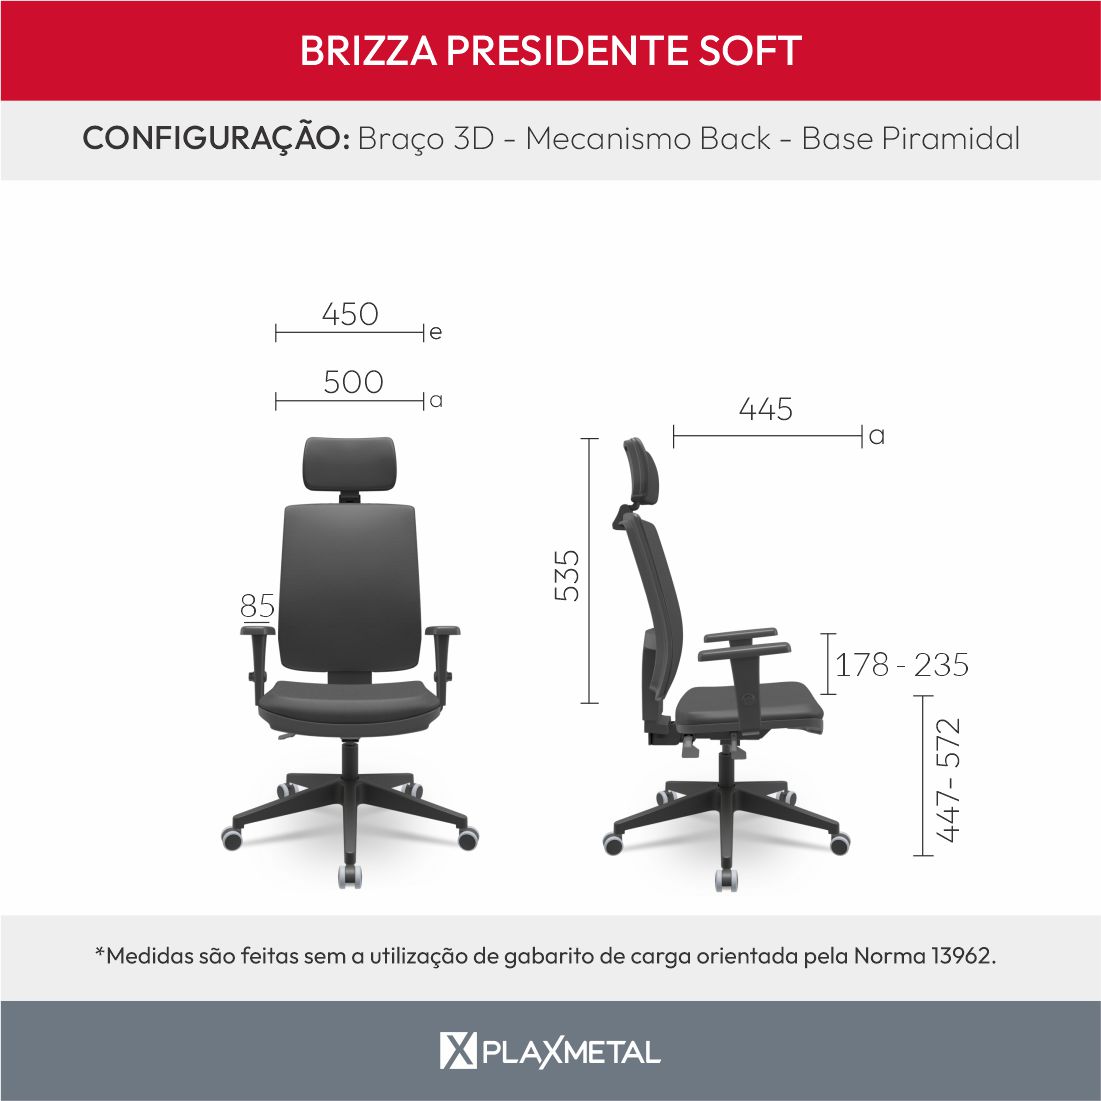 Dimensões Brizza Presidente Brizza Presidente Soft